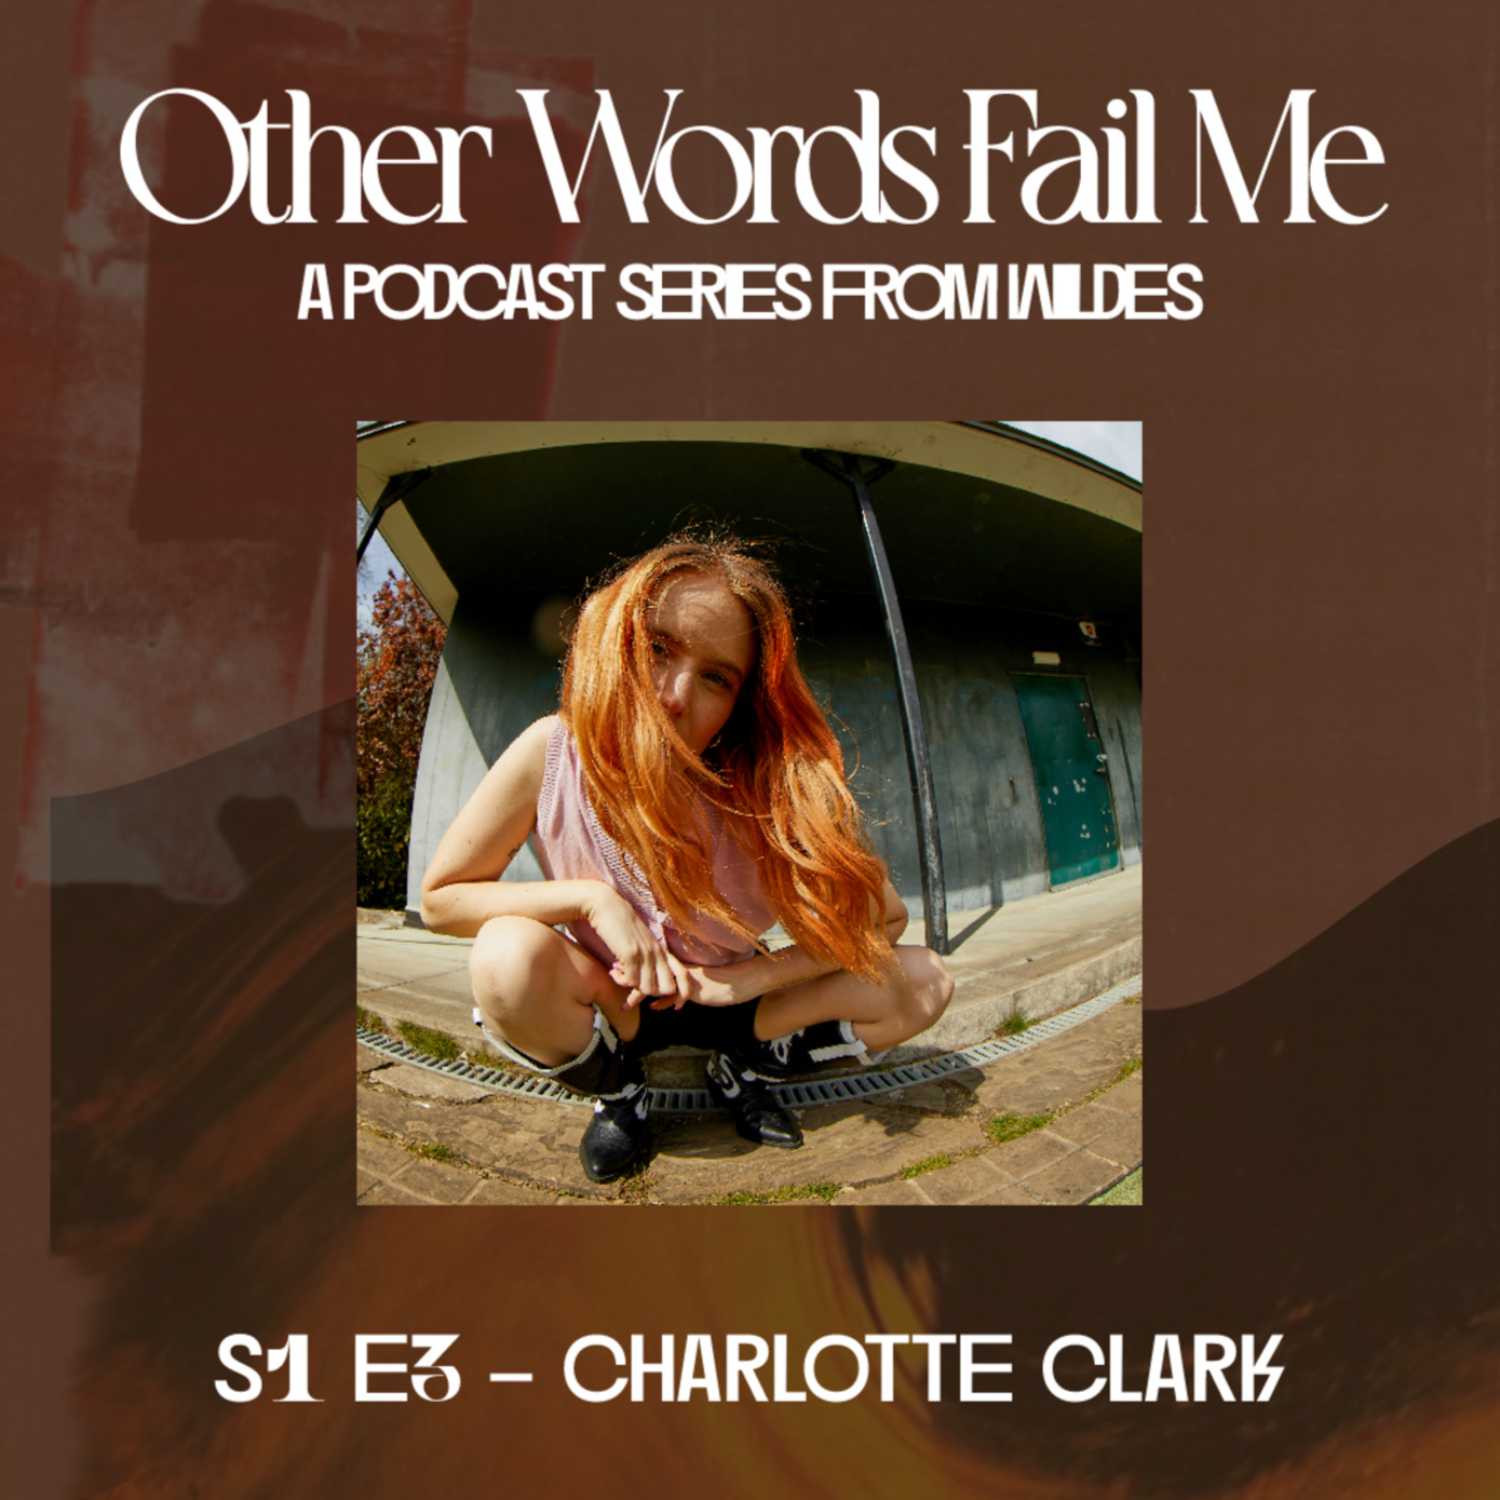 S1 E3: Charlotte Clark